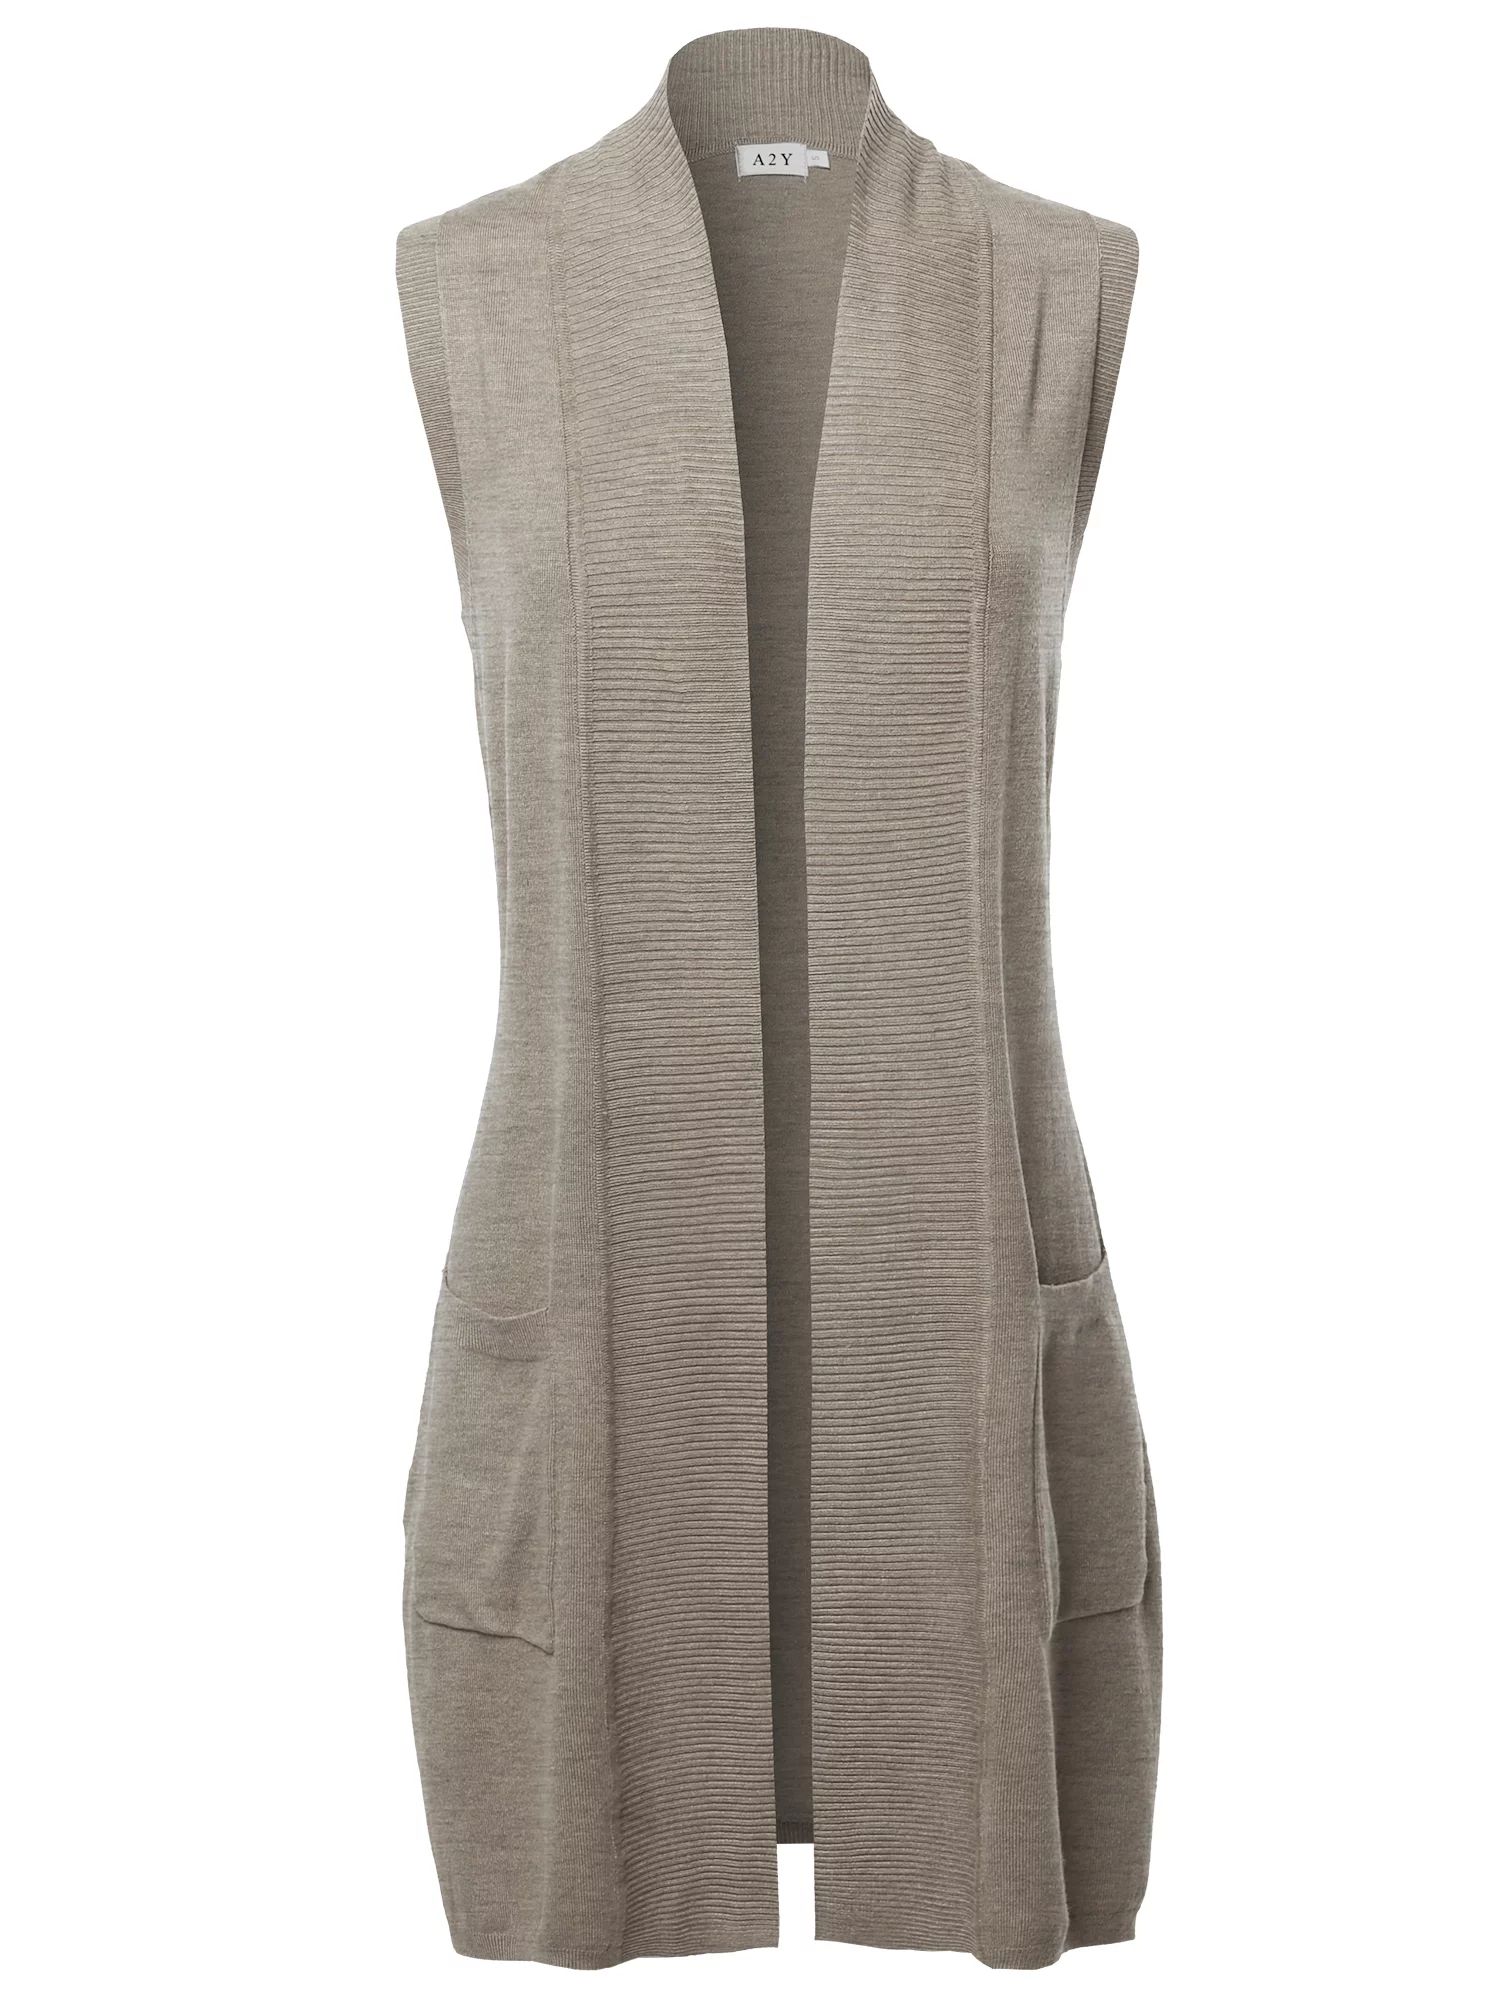 A2Y Women's Open Front Long Sleeveless Draped Side Pockets Vest Knit Sweater Camel XL | Walmart (US)